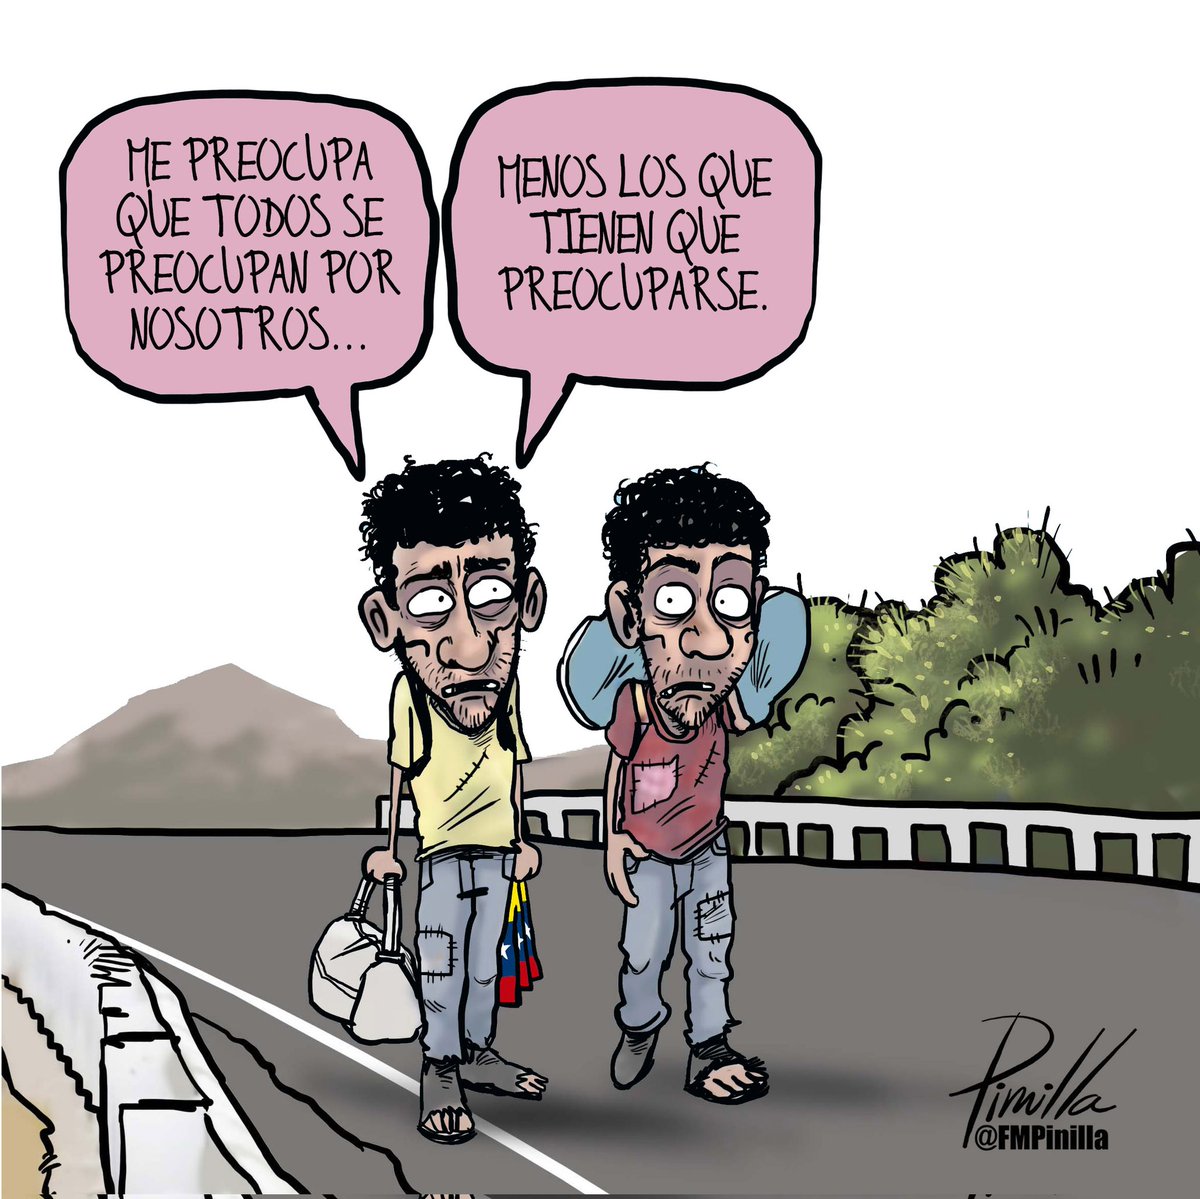 Régimen venezolano no se preocupa por los migrantes... • #caricatura para @elnacionalweb. • #caricatura #cartoon #venezuela #venezolanos #politicalcartoon #migrantes